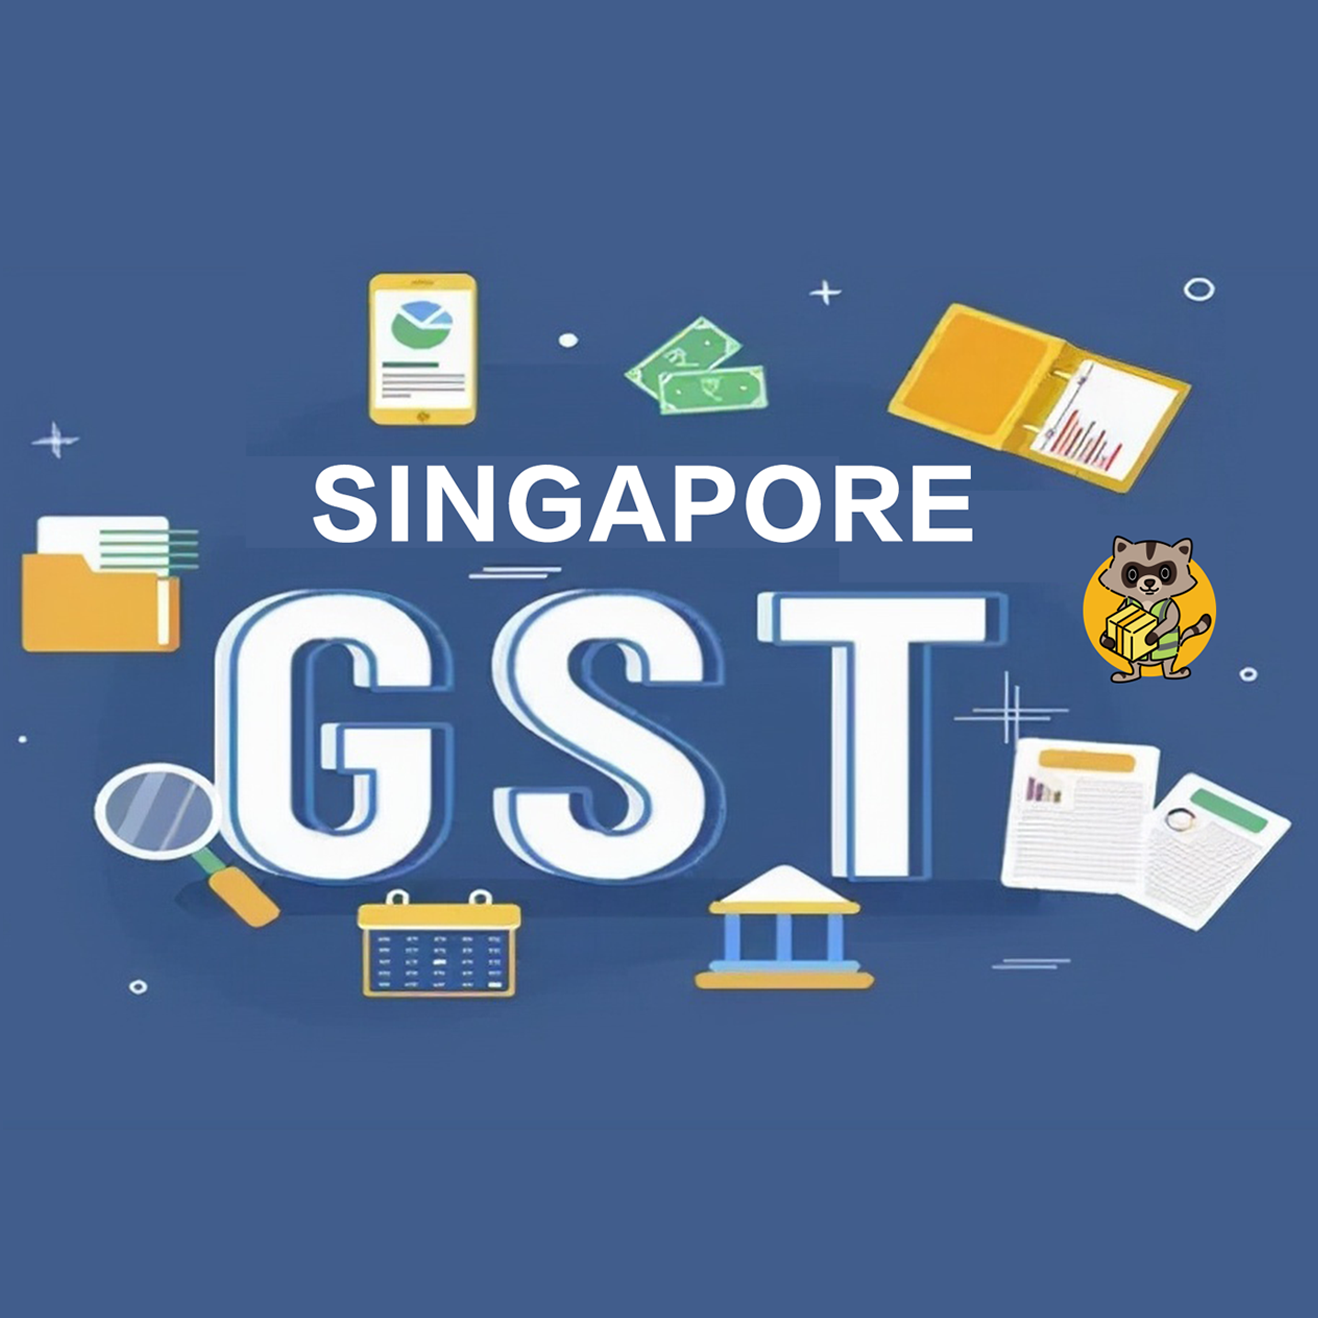 2023年新加坡商品和服务税 (GST)增加的说明 易包裹全球转运